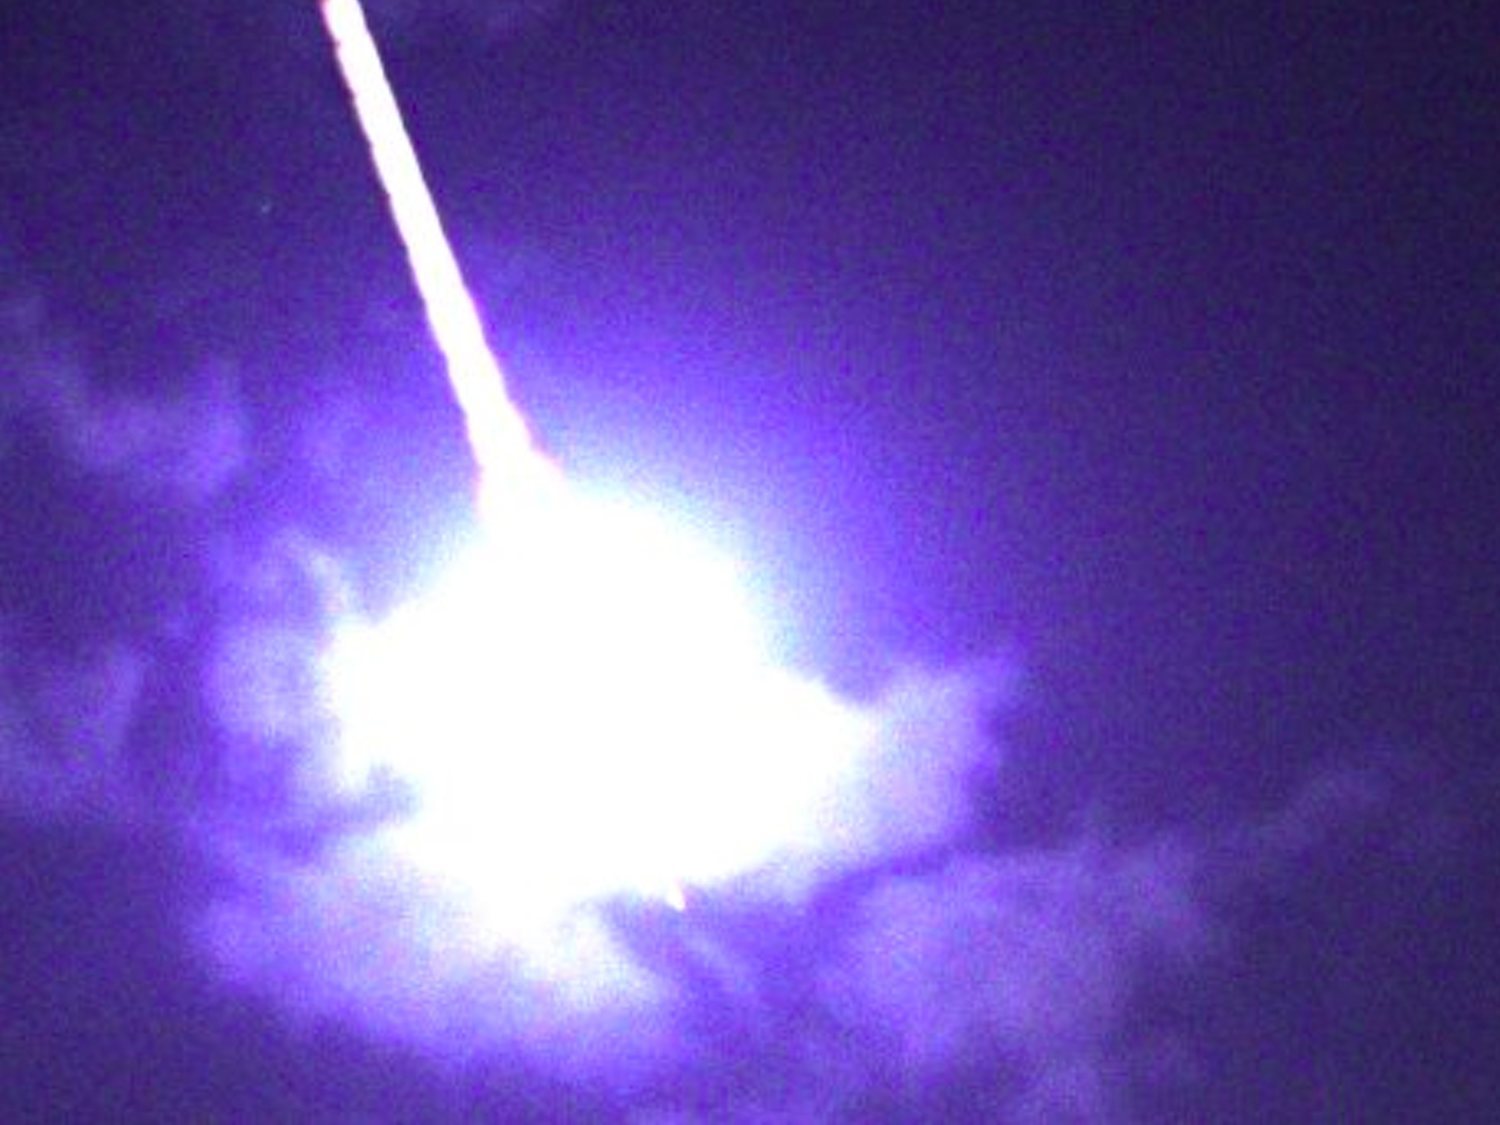 Detectan una bola de fuego gigante sobrevolando el sur de España a 220.000 km/hora